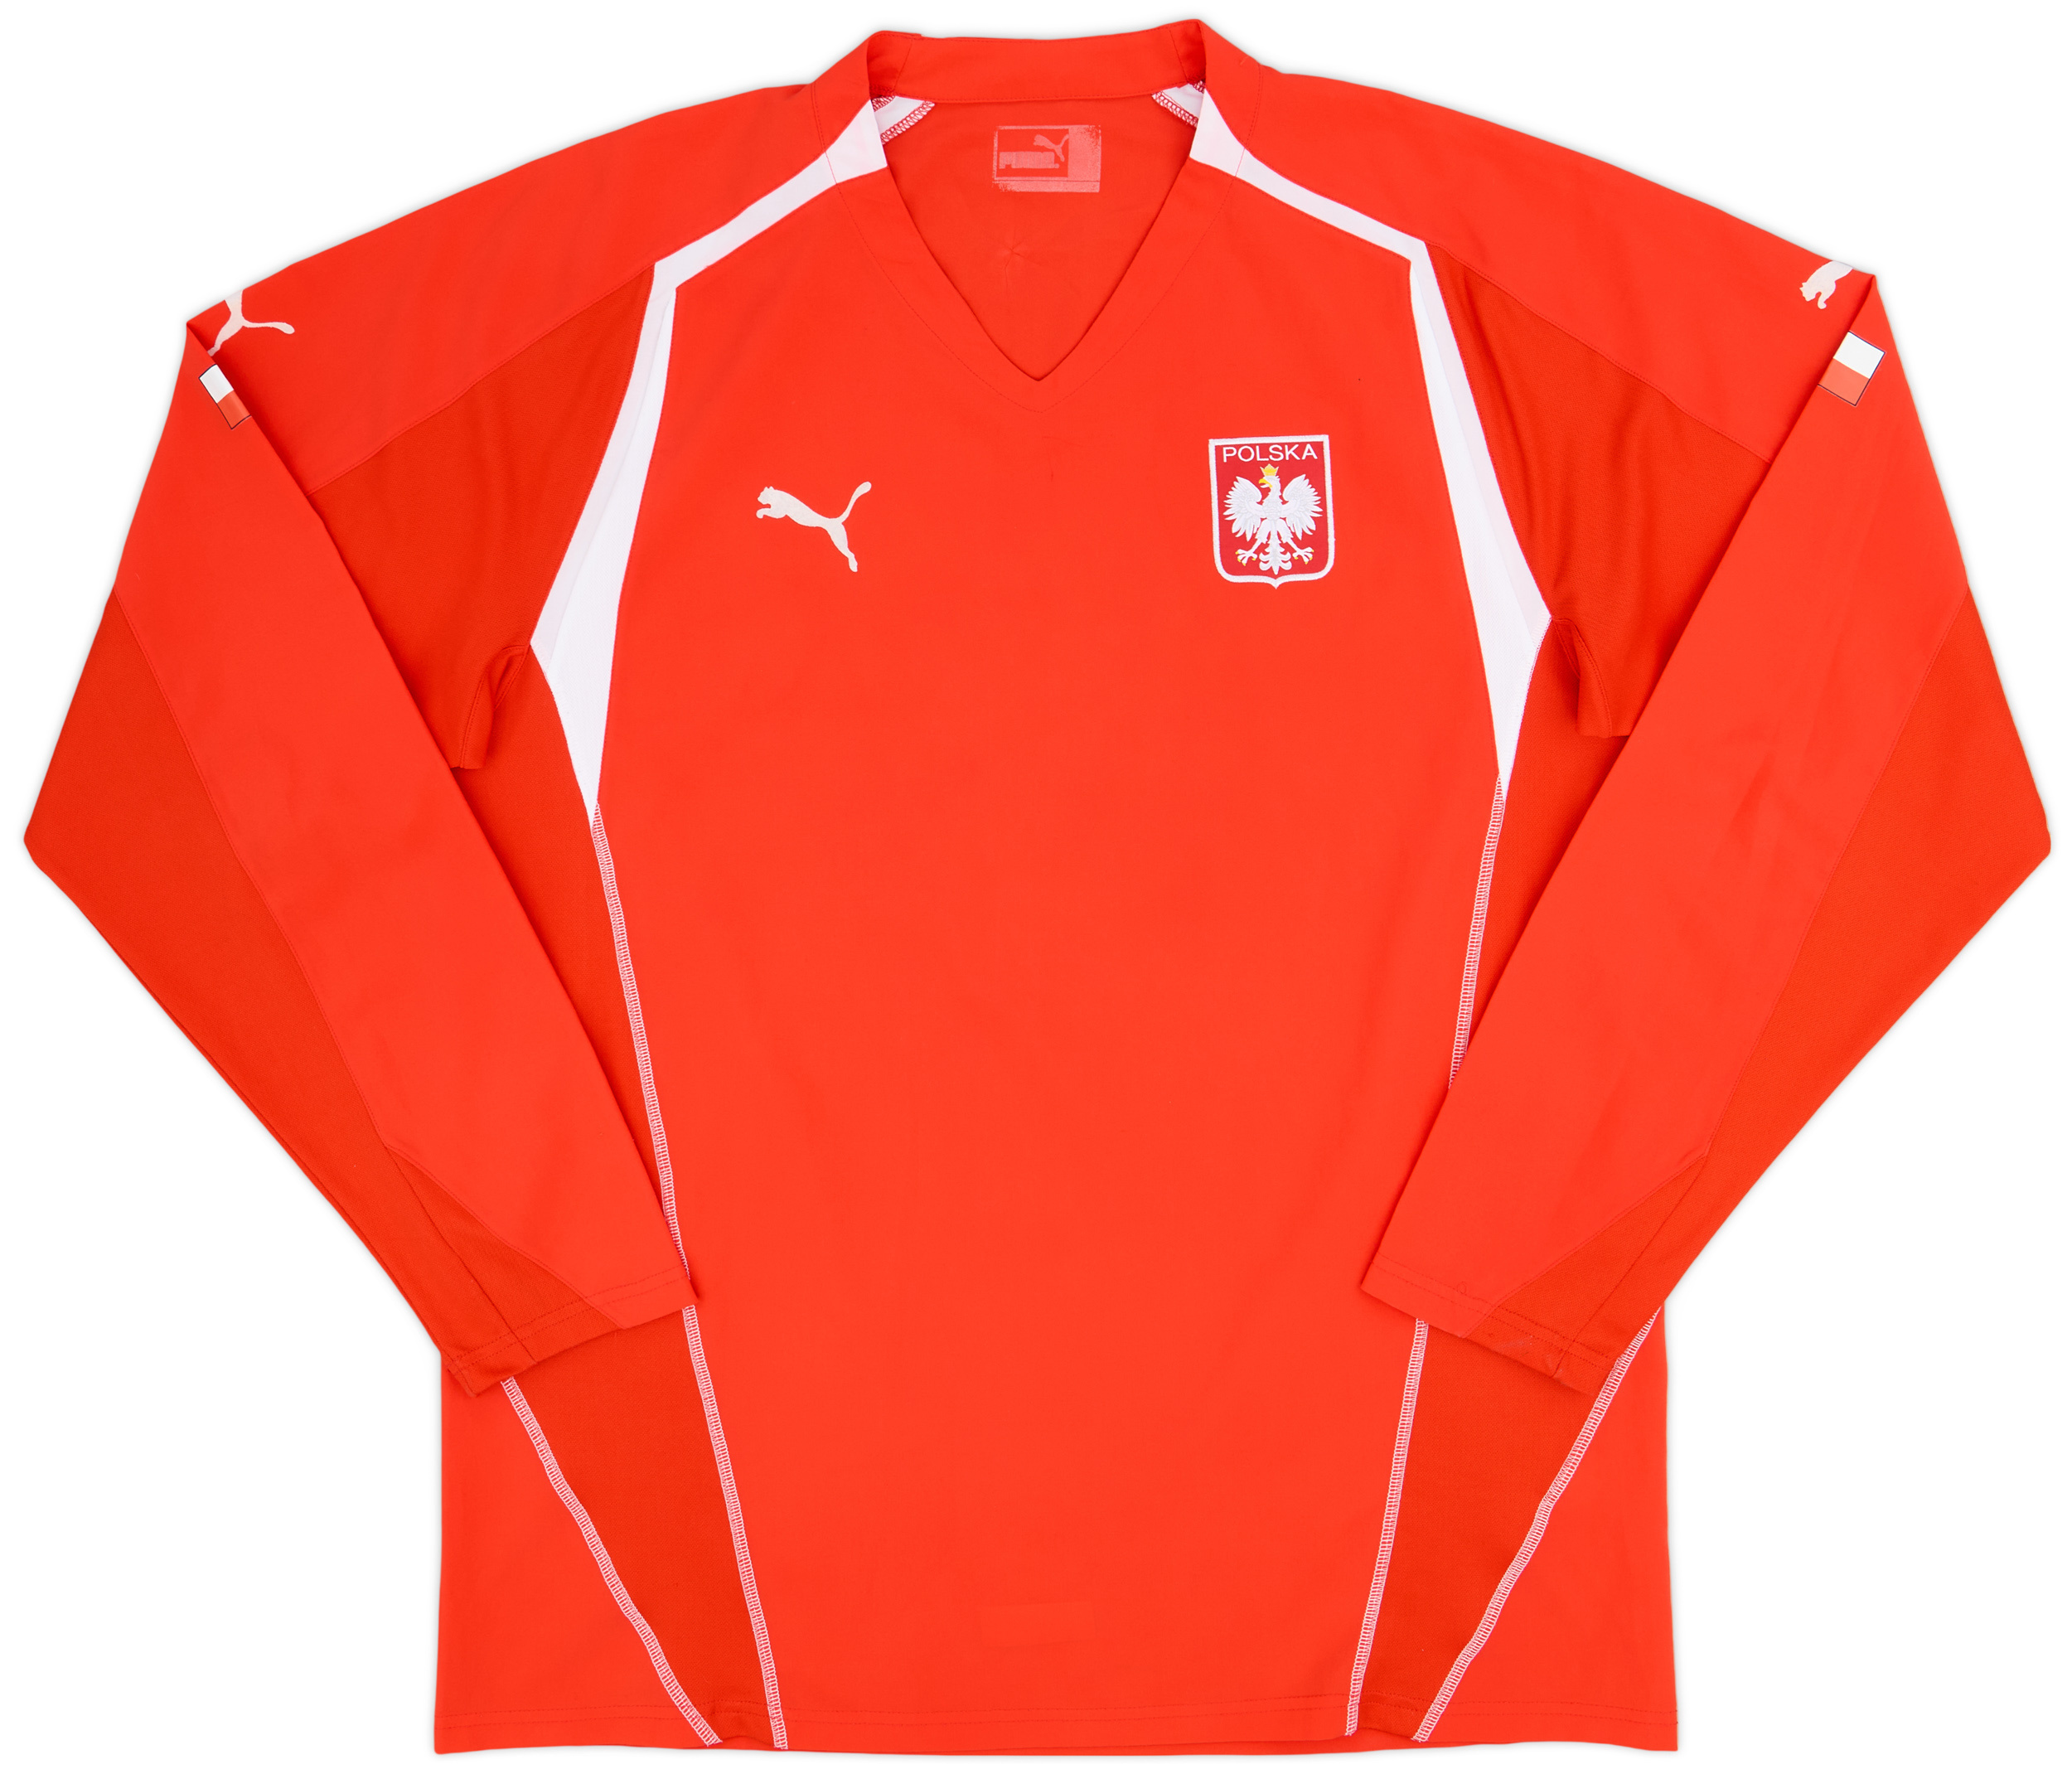 2004-06 Poland Away Shirt - 9/10 - ()